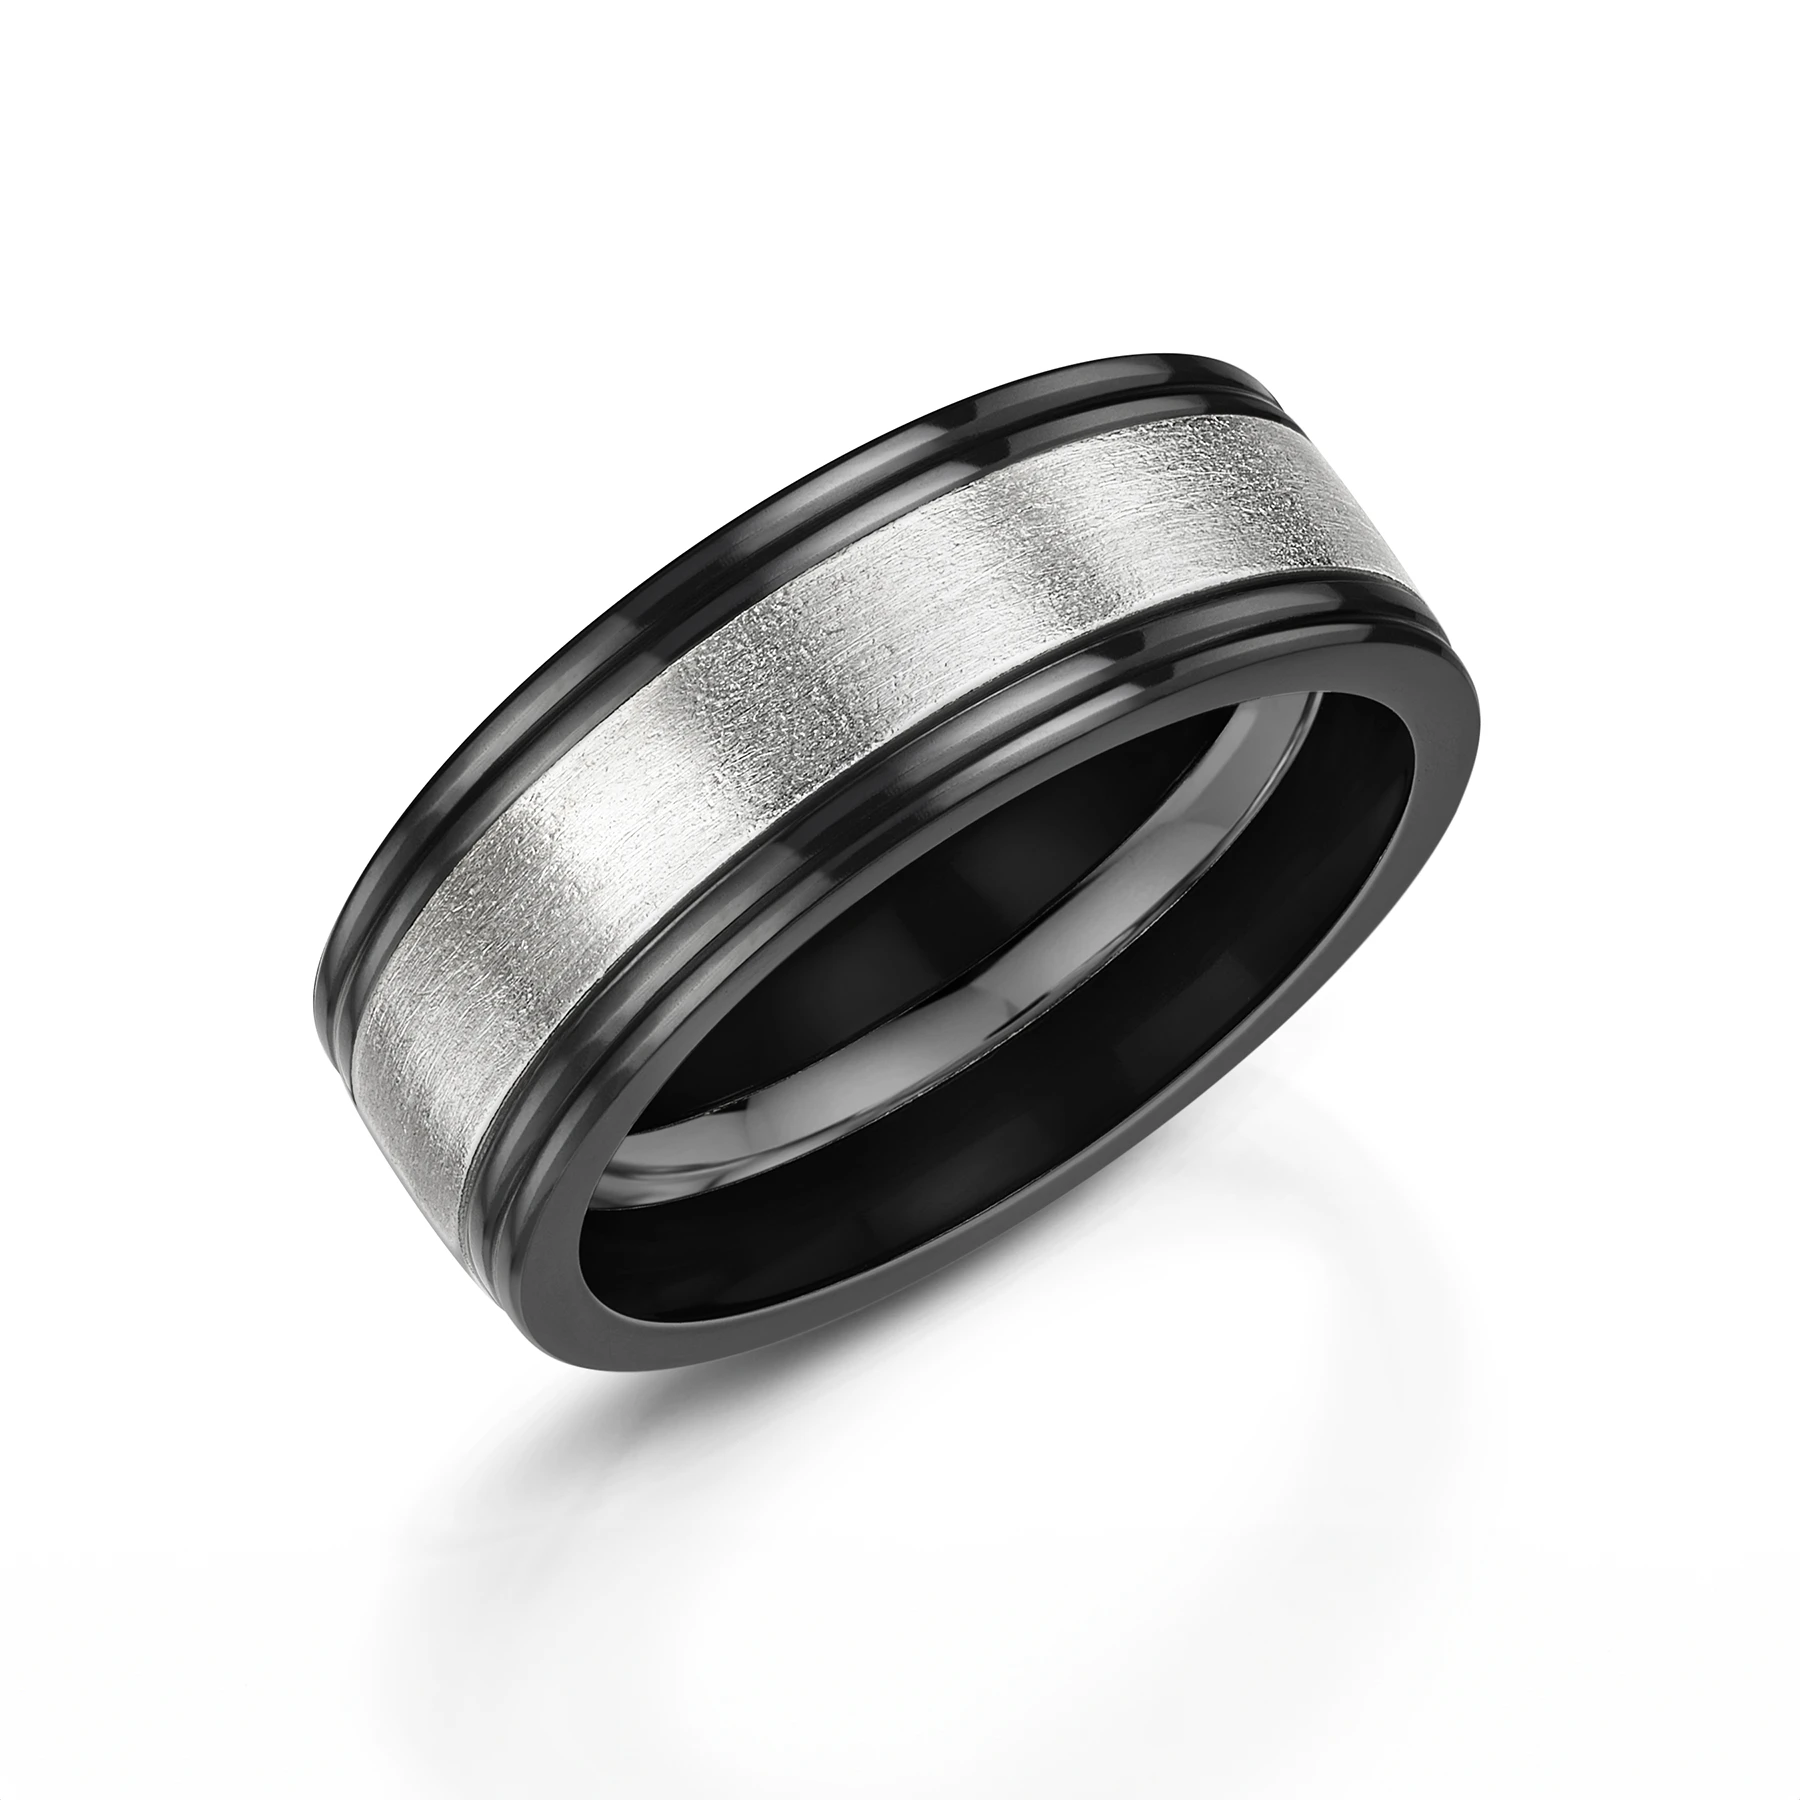 Black Zirconium & Platinum Wedding Ring